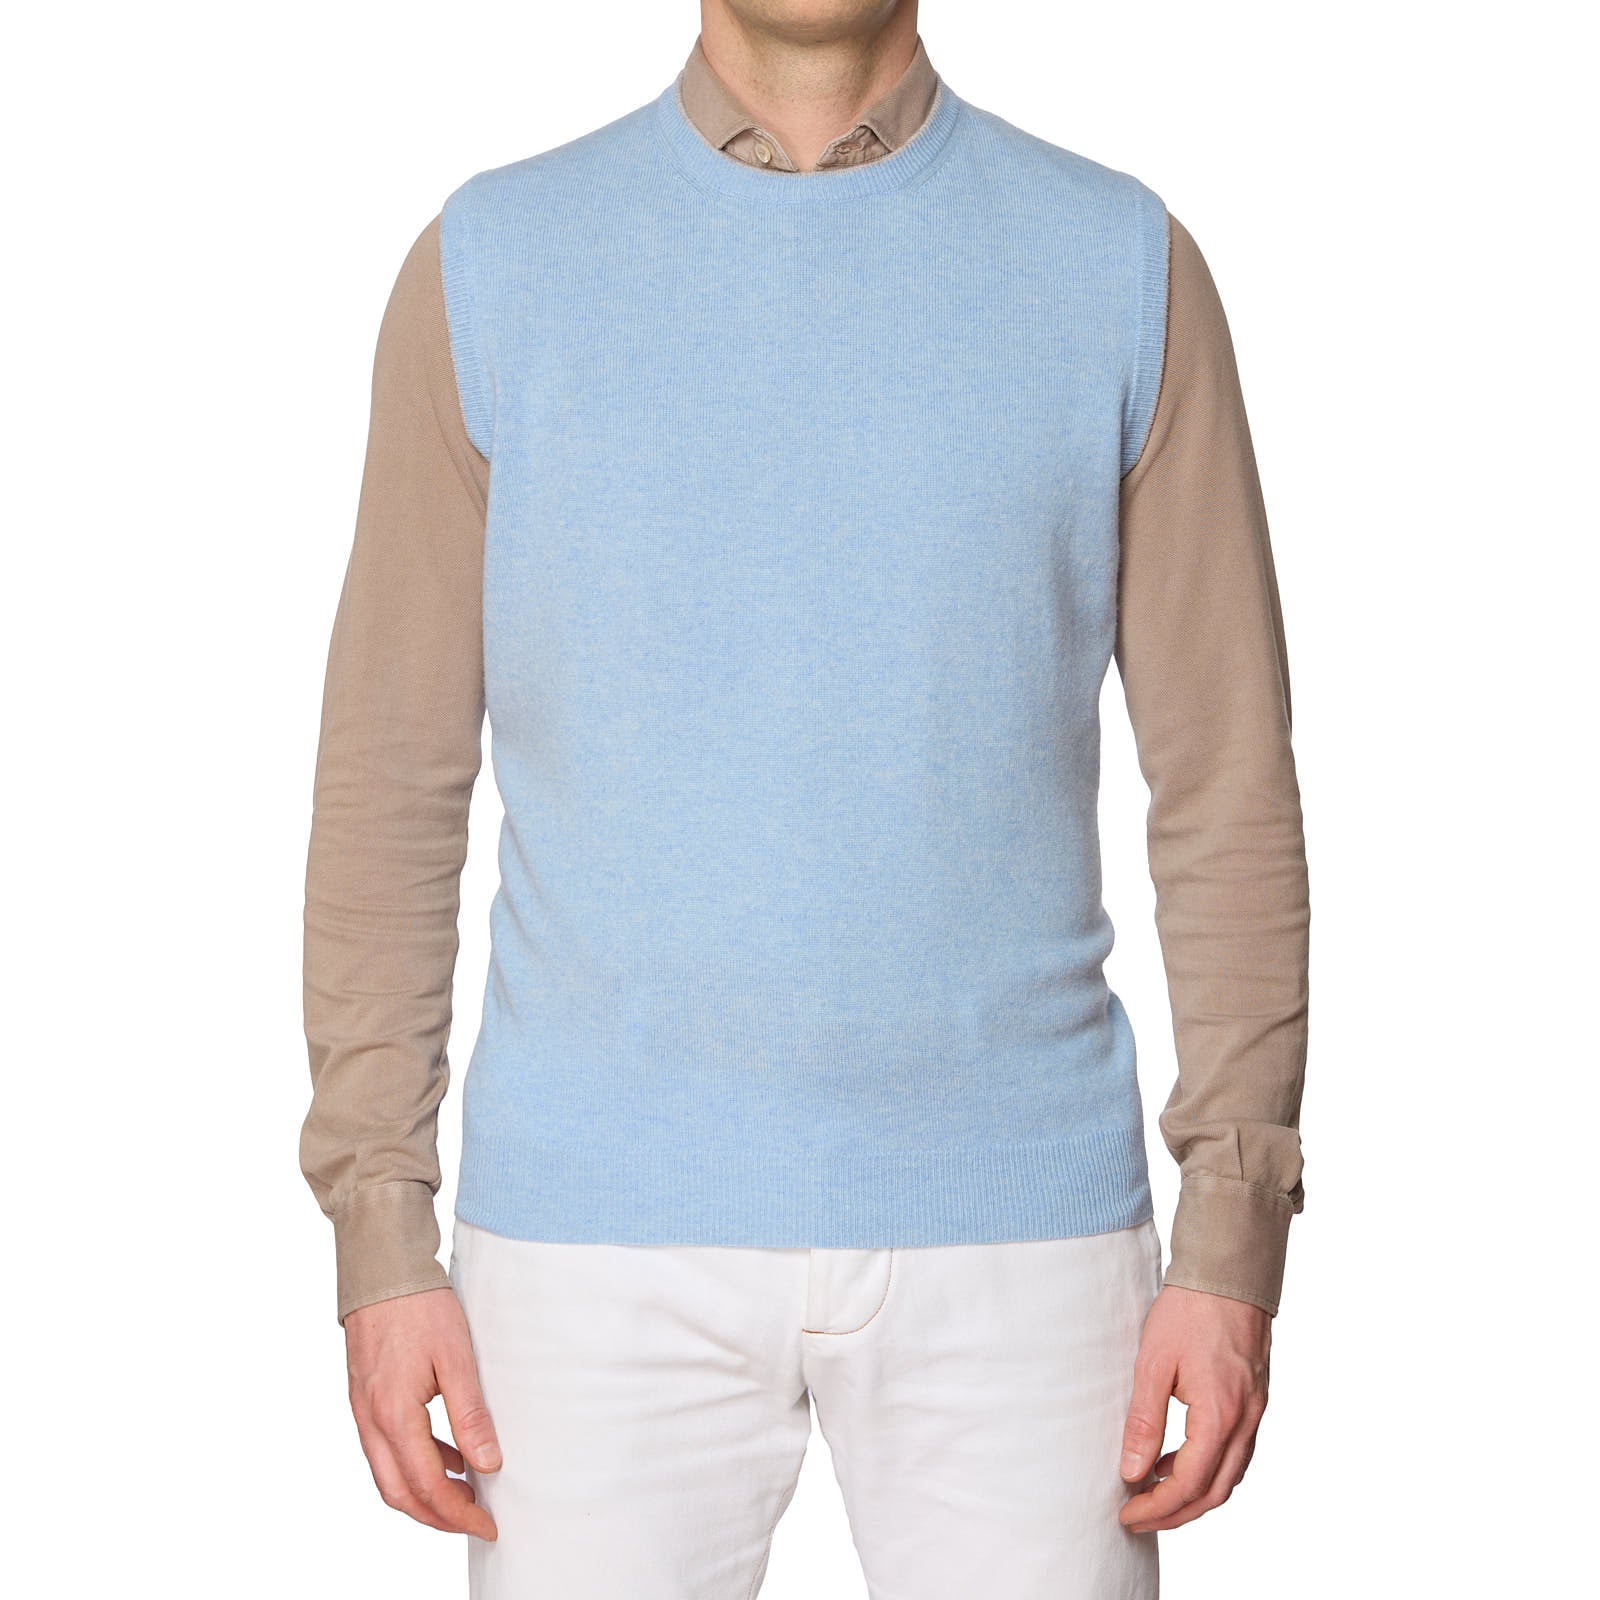 ONES Light Blue Cashmere Knit Sweater Vest EU 50 NEW US M